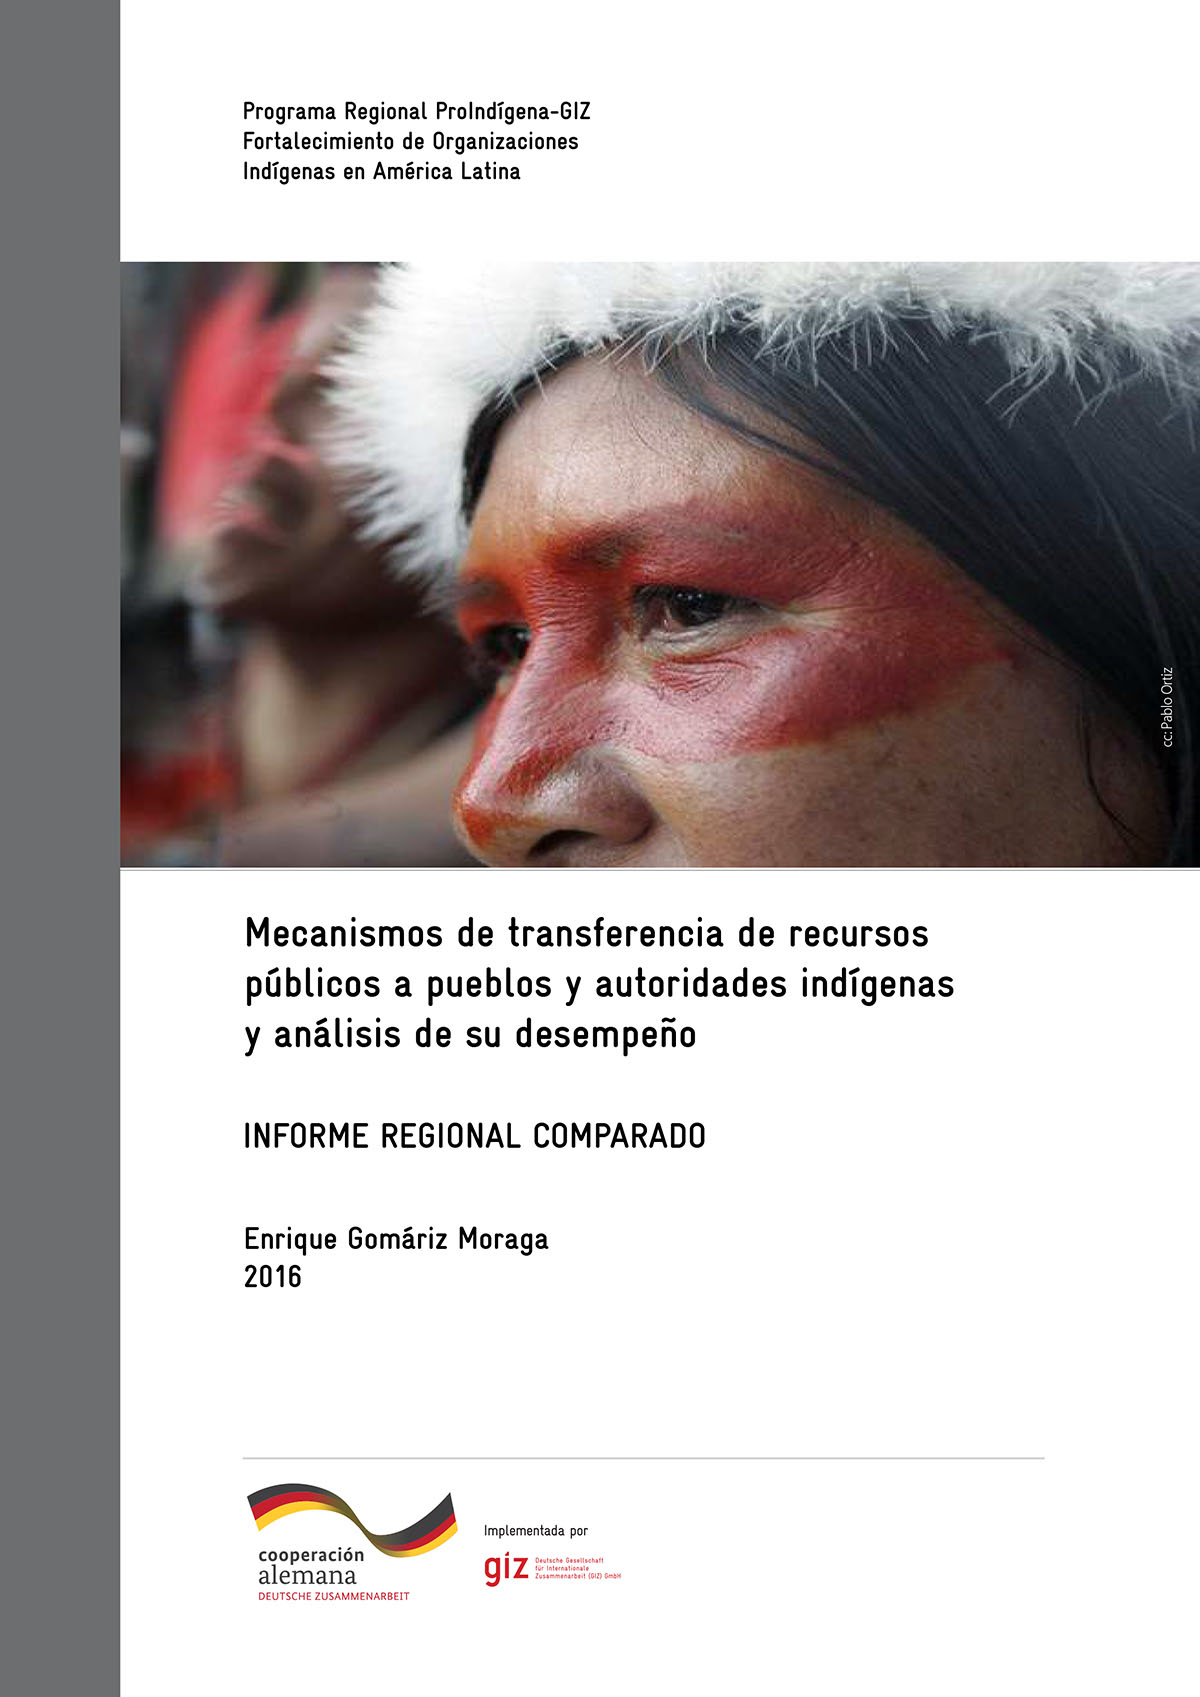 Mecanismos de transferencia de recursos públicos a pueblos y autoridades indígenas y análisis de su desempeño: informe regional comparado